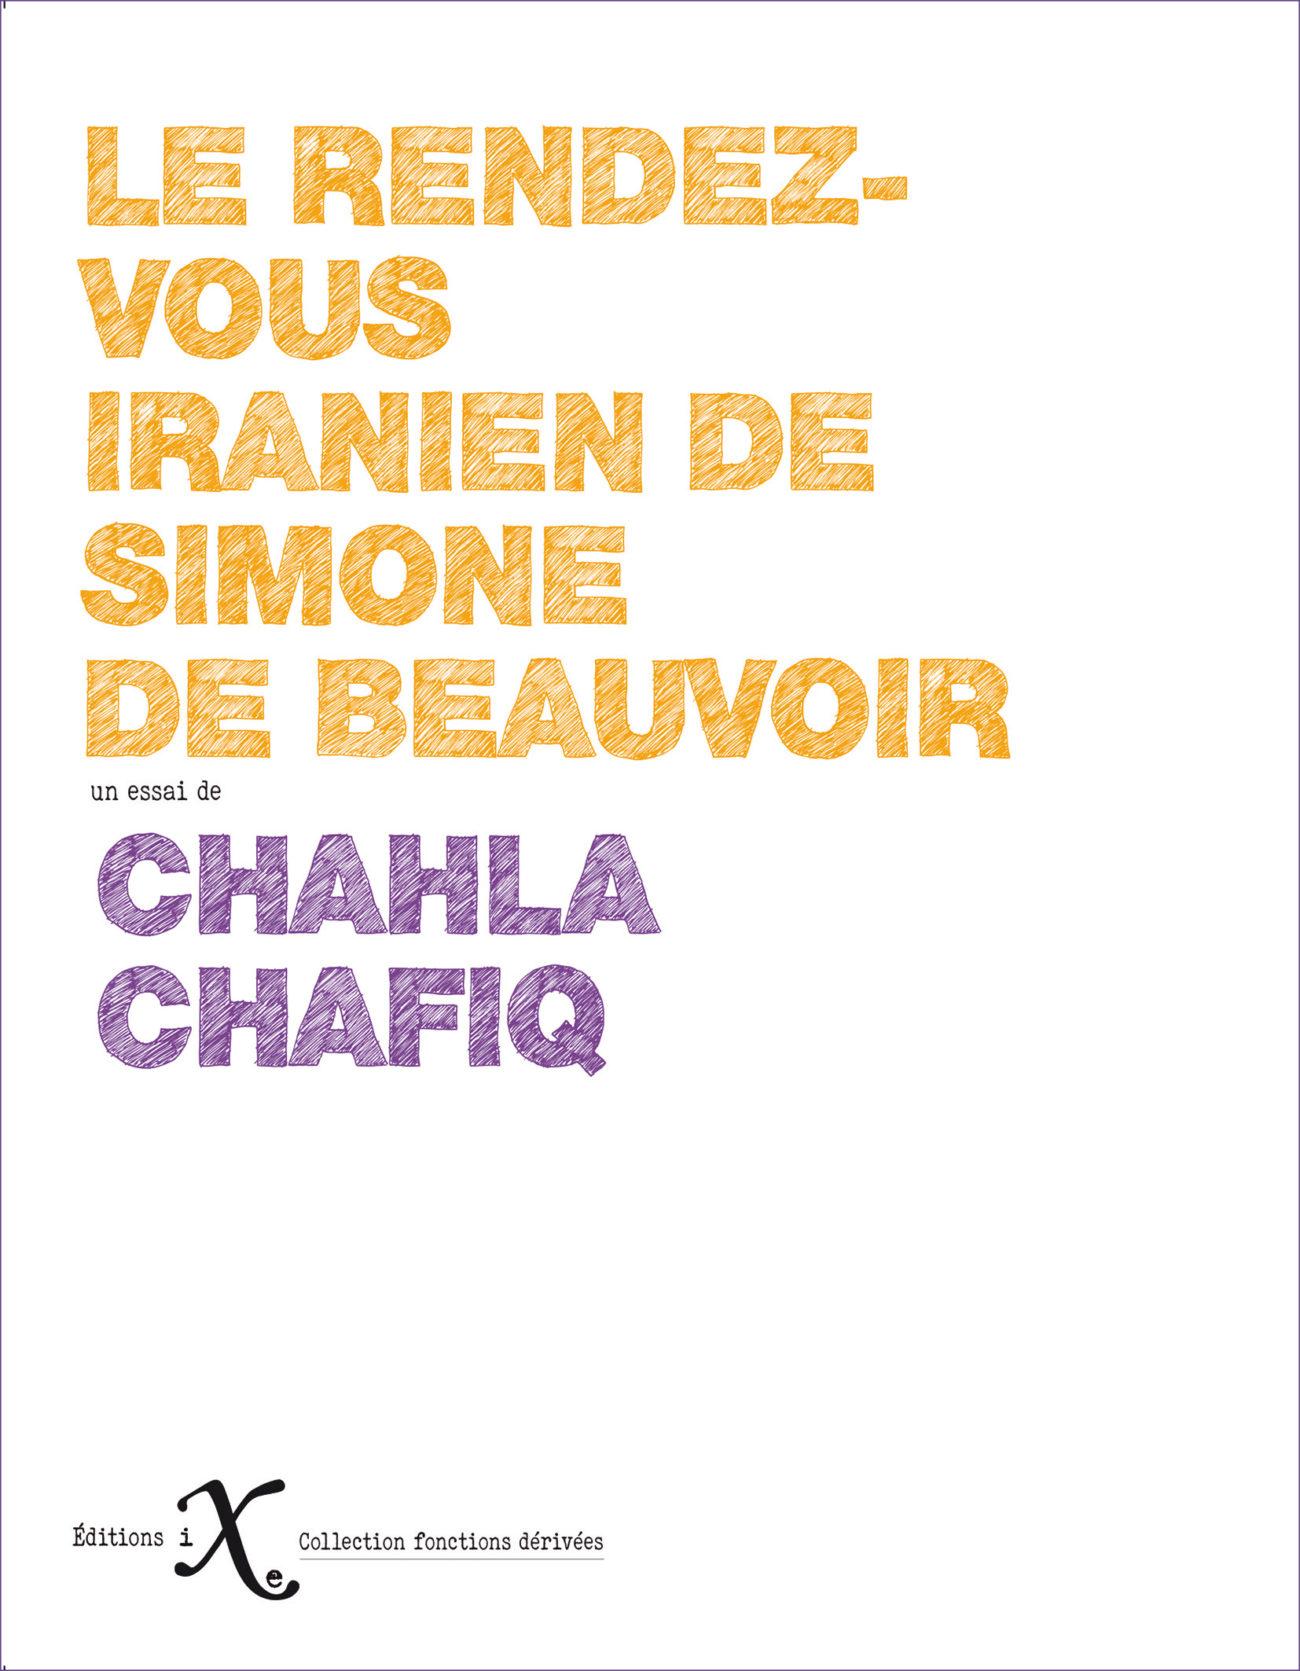 Le rendez-vous iranien de Simone de Beauvoir